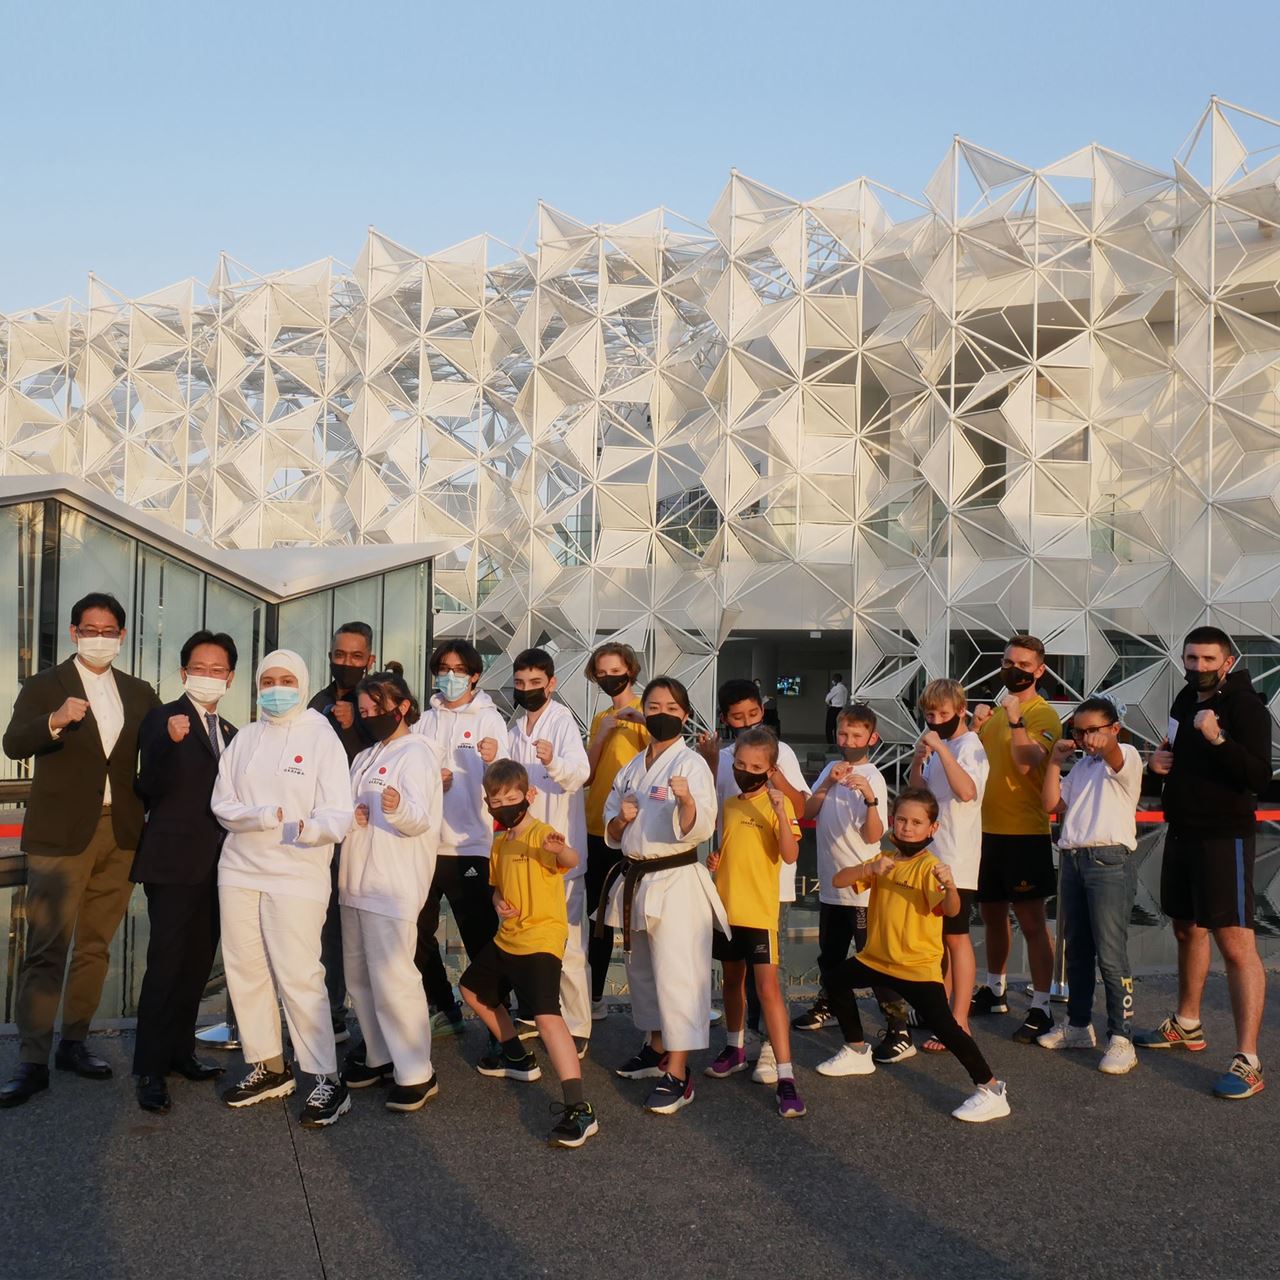 لاعبة فريق باناسونيك الأولمبي وبطلة الكاراتيه ساكورا كوكوماي تلتقي بطلاب الكاراتيه في جناح اليابان في إكسبو 2020 دبي في الإمارات